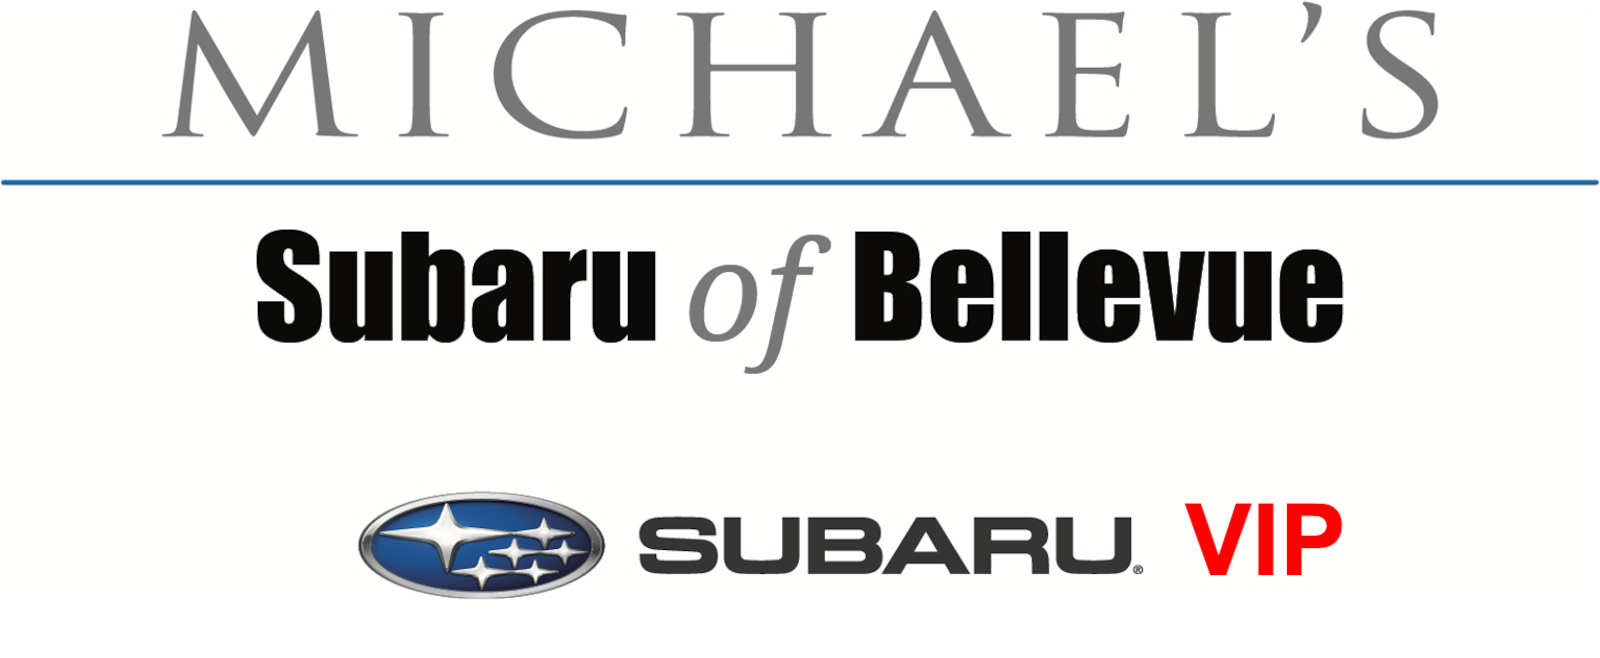 The Michael’s Subaru VIP Package Michael's Subaru of Bellevue